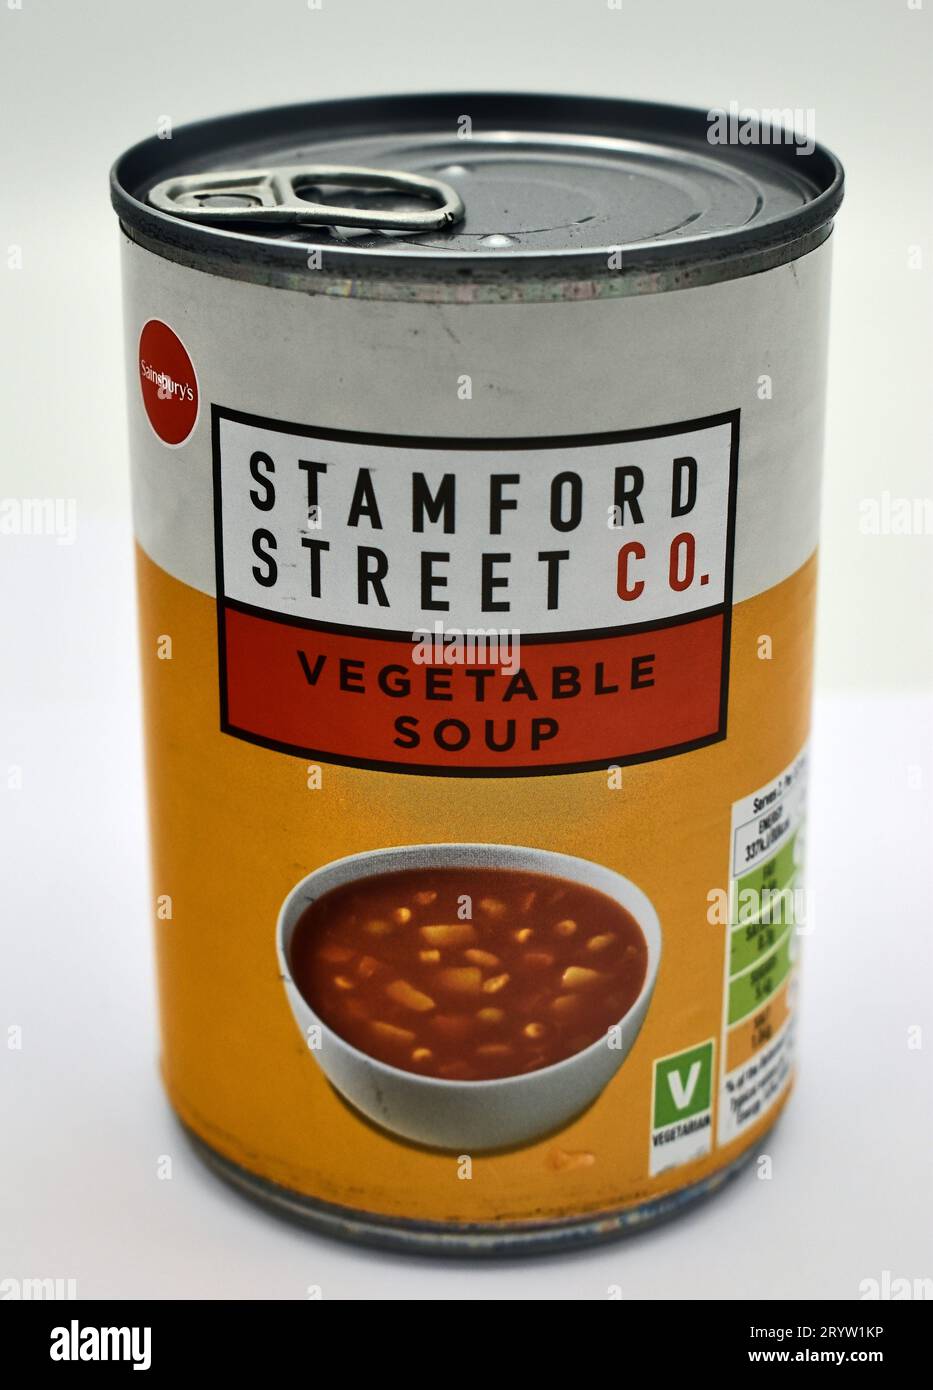 Sainsbury's Supermarkt hat seine wertvollen Marken, einschließlich Dosensuppe, auf ein neues Label verlagert - Stamford Street Co. Stockfoto